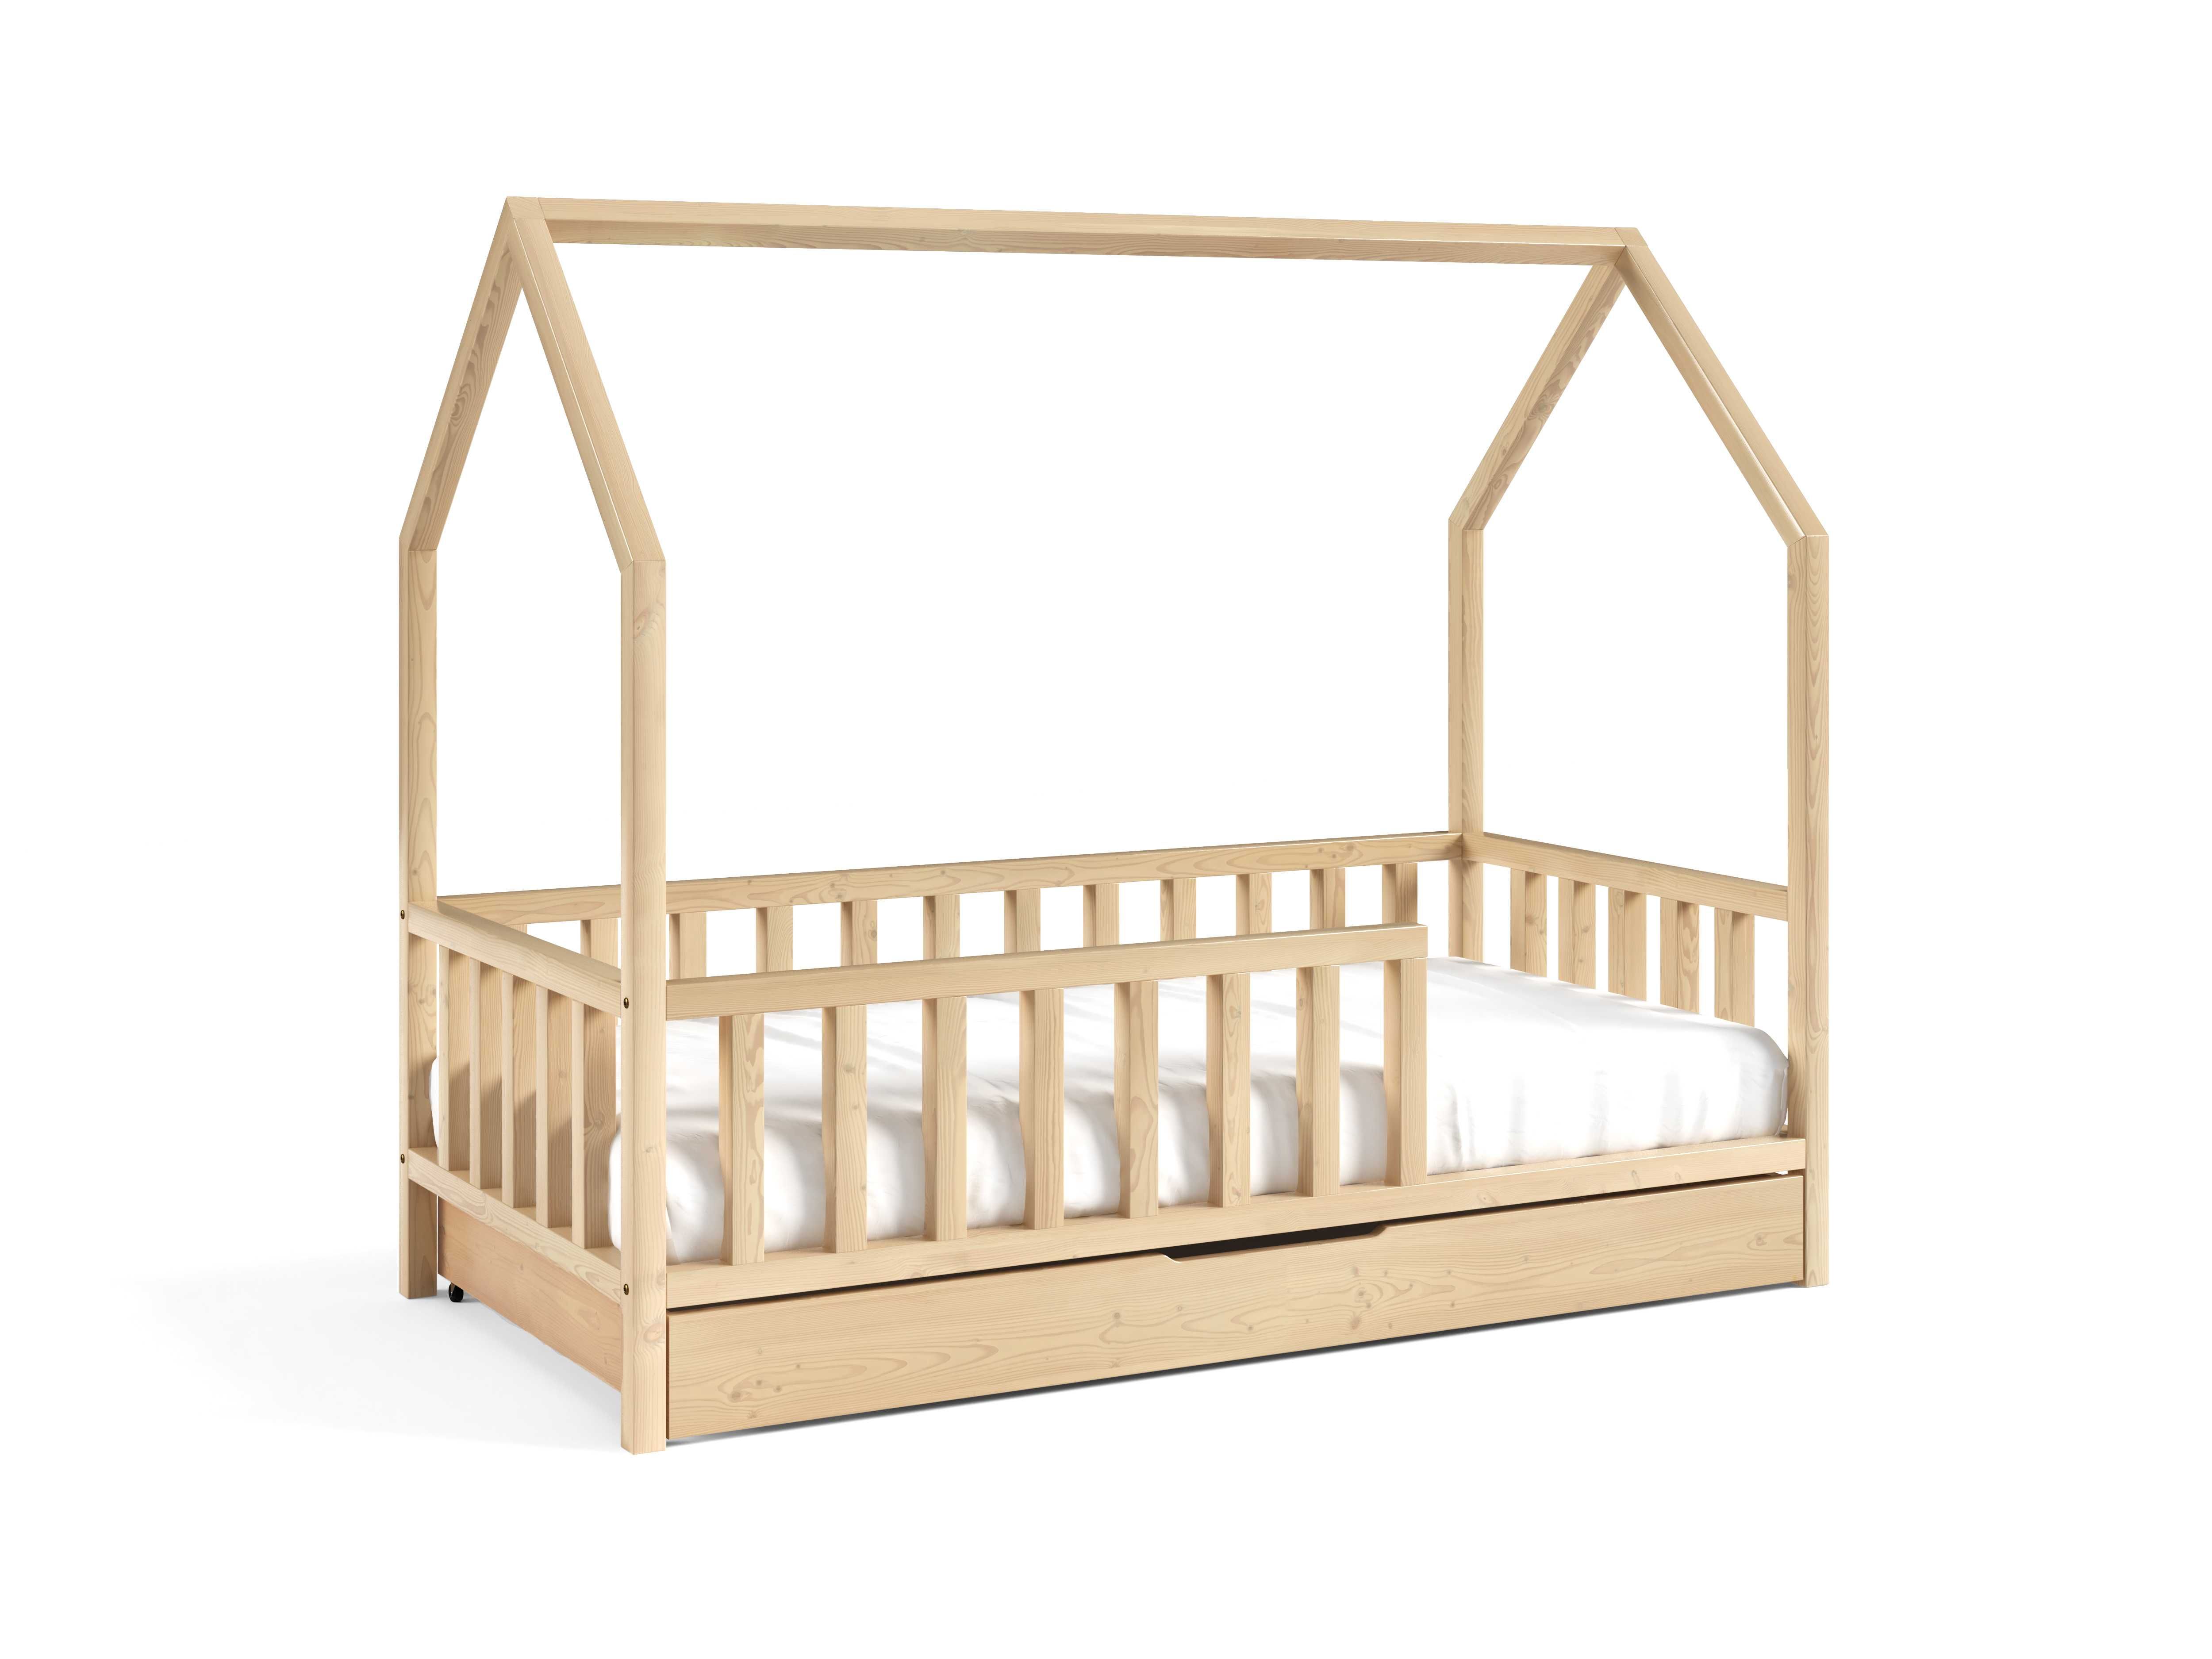 Łóżko dla dzieci DOMEK ANTOŚ - materac w zestawie GRATIS